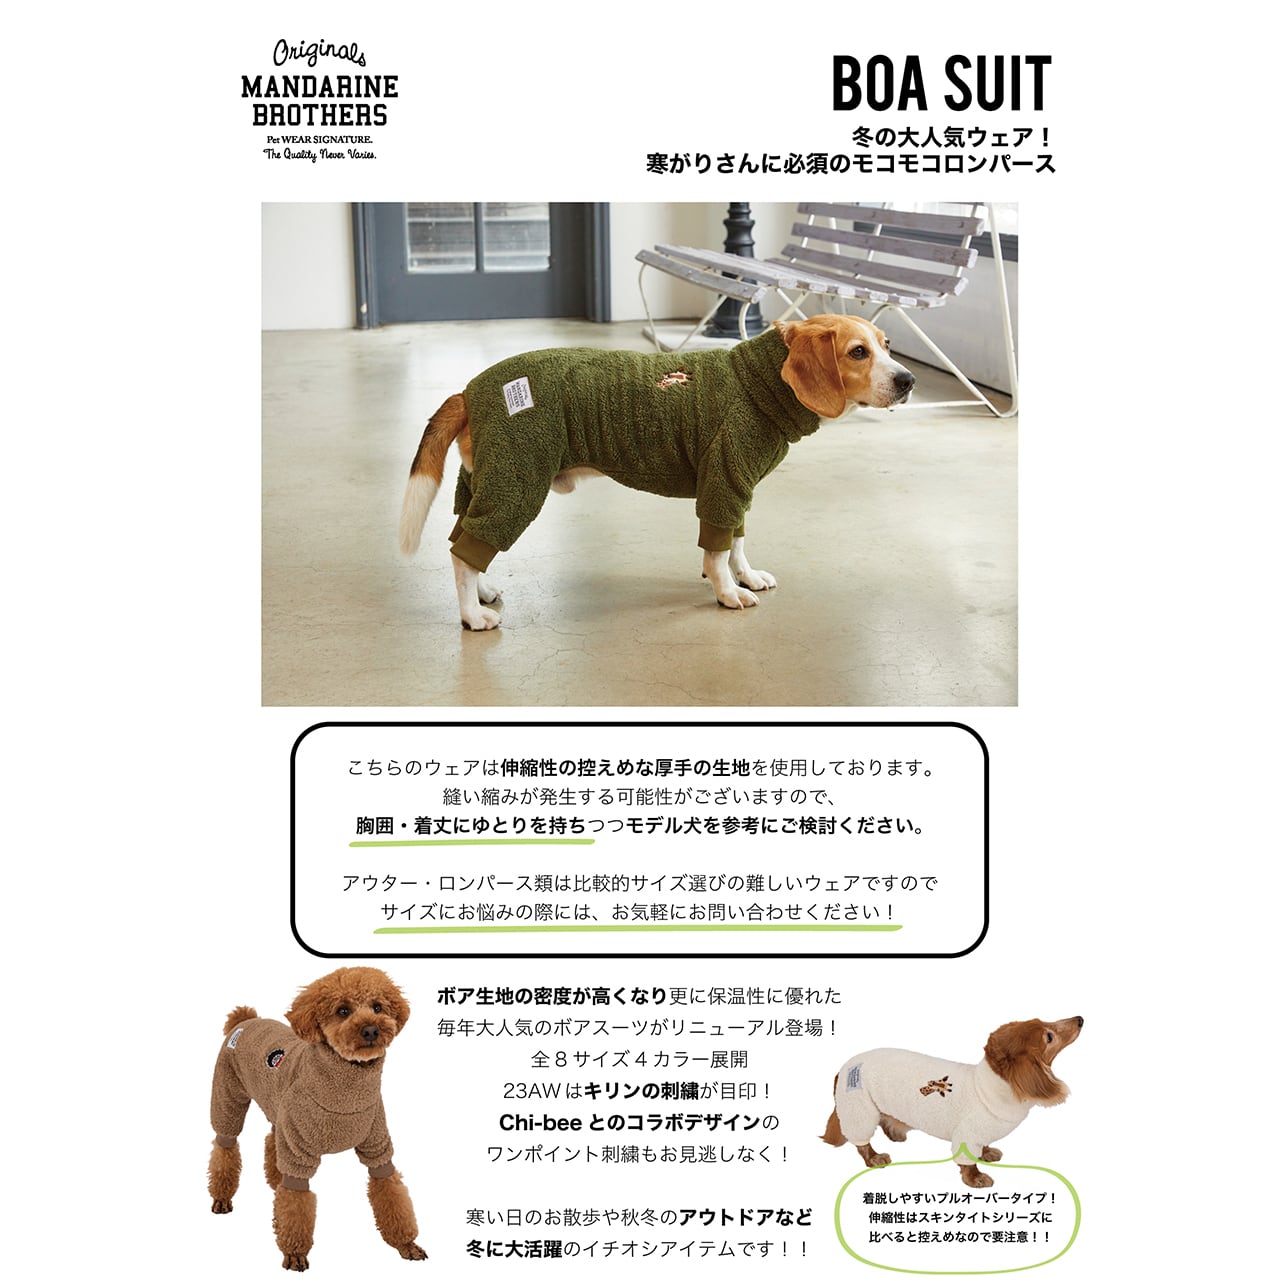 大型犬服 タイトロンパース【確認用】 - www.sorbillomenu.com